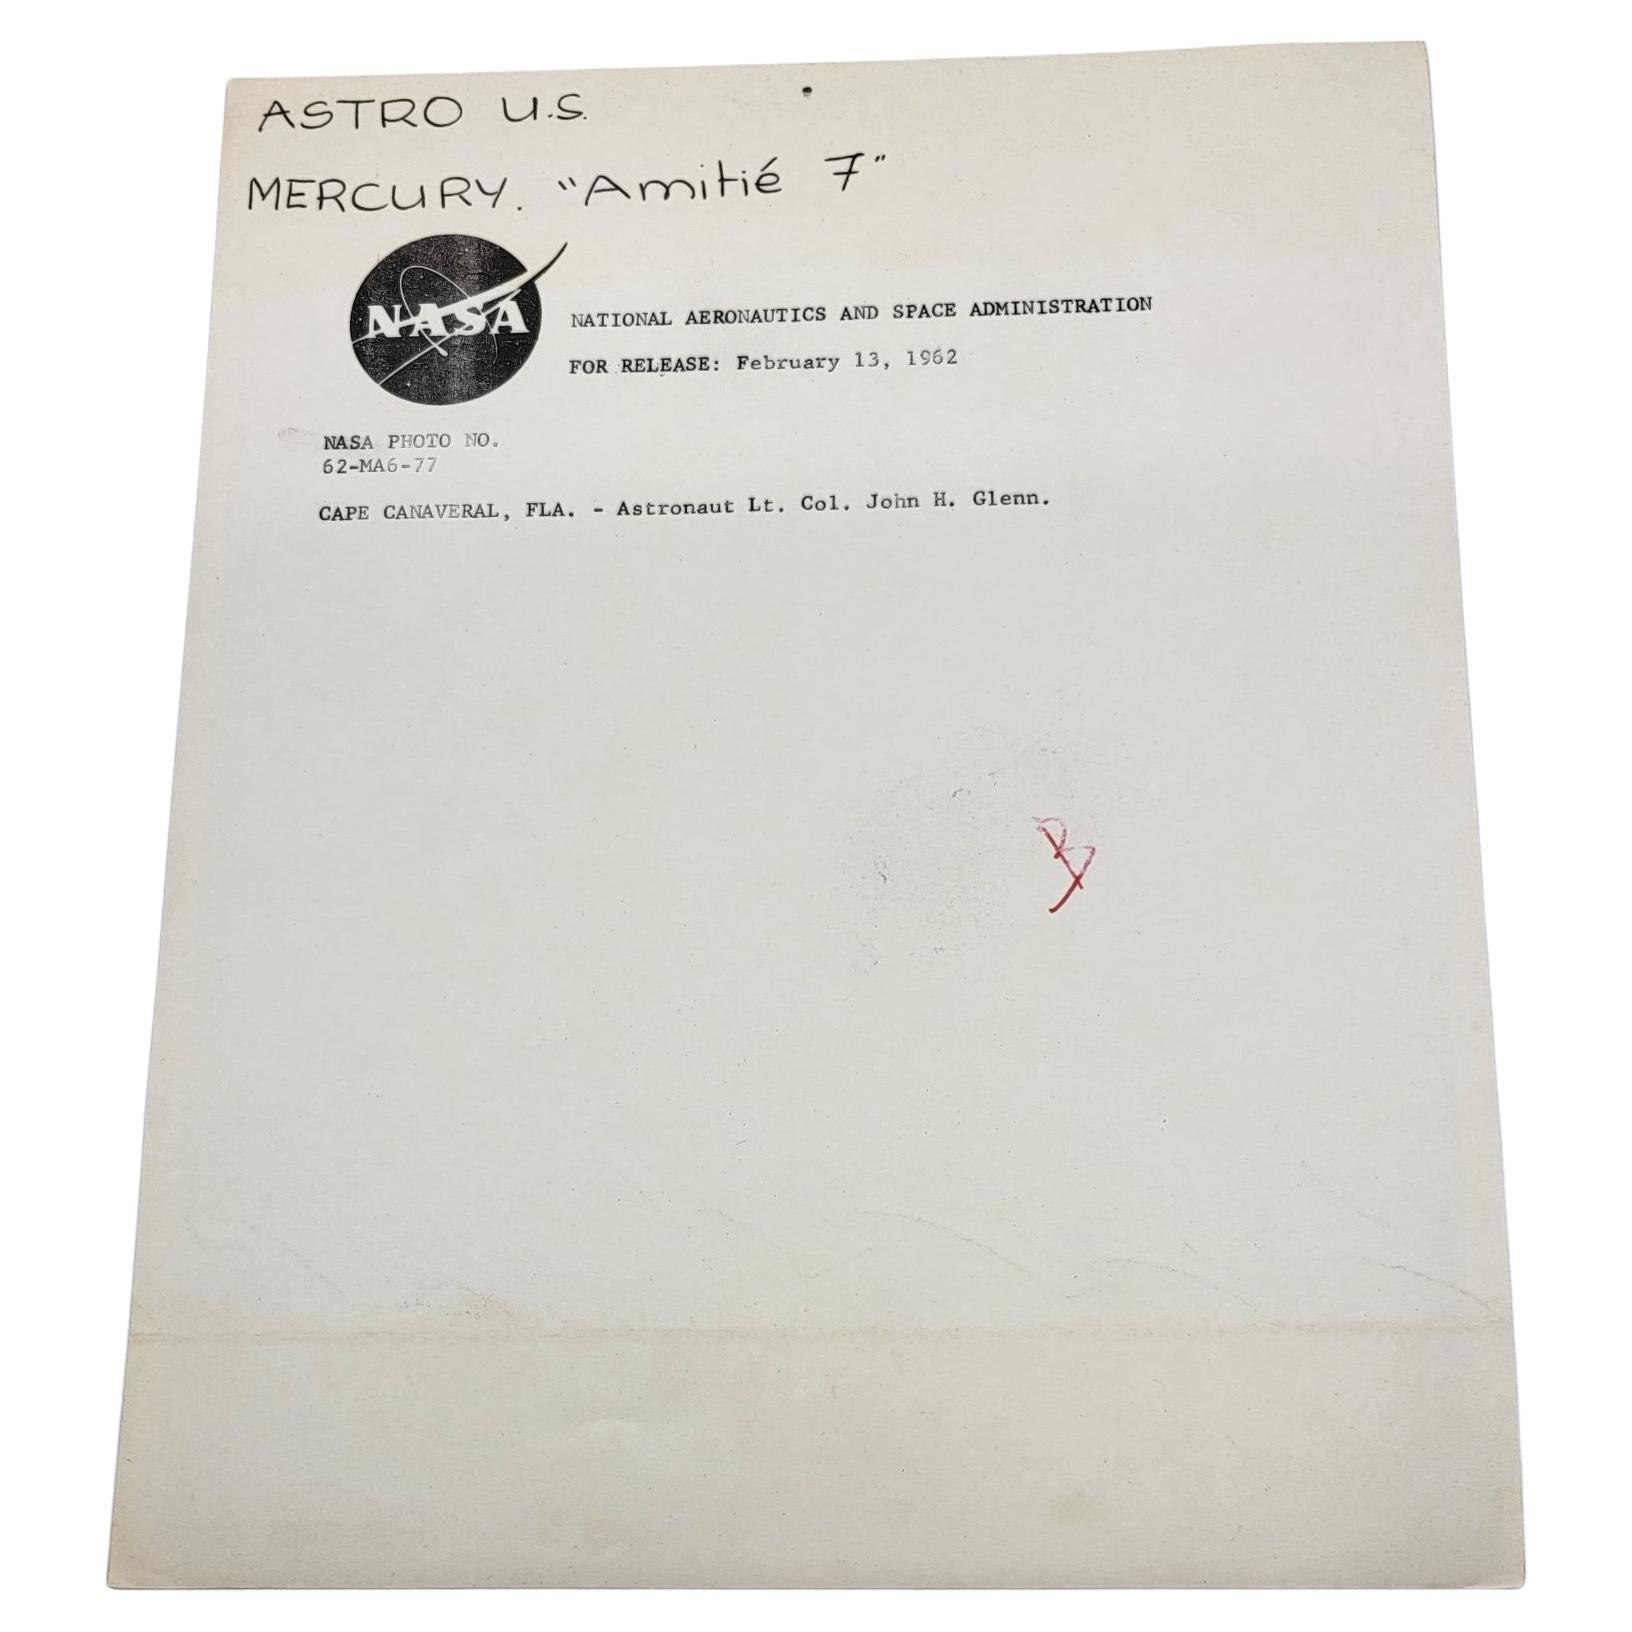 Exceptionnelle photo de John Glenn, premier homme à être allé dans l'espace.
Instant immortalisé le 13/02/1962 soit 7 jours avant qu'il effectue la première mission habitée dans l'espace
CAP CANAVERAL Photo NO 62-MA6-77